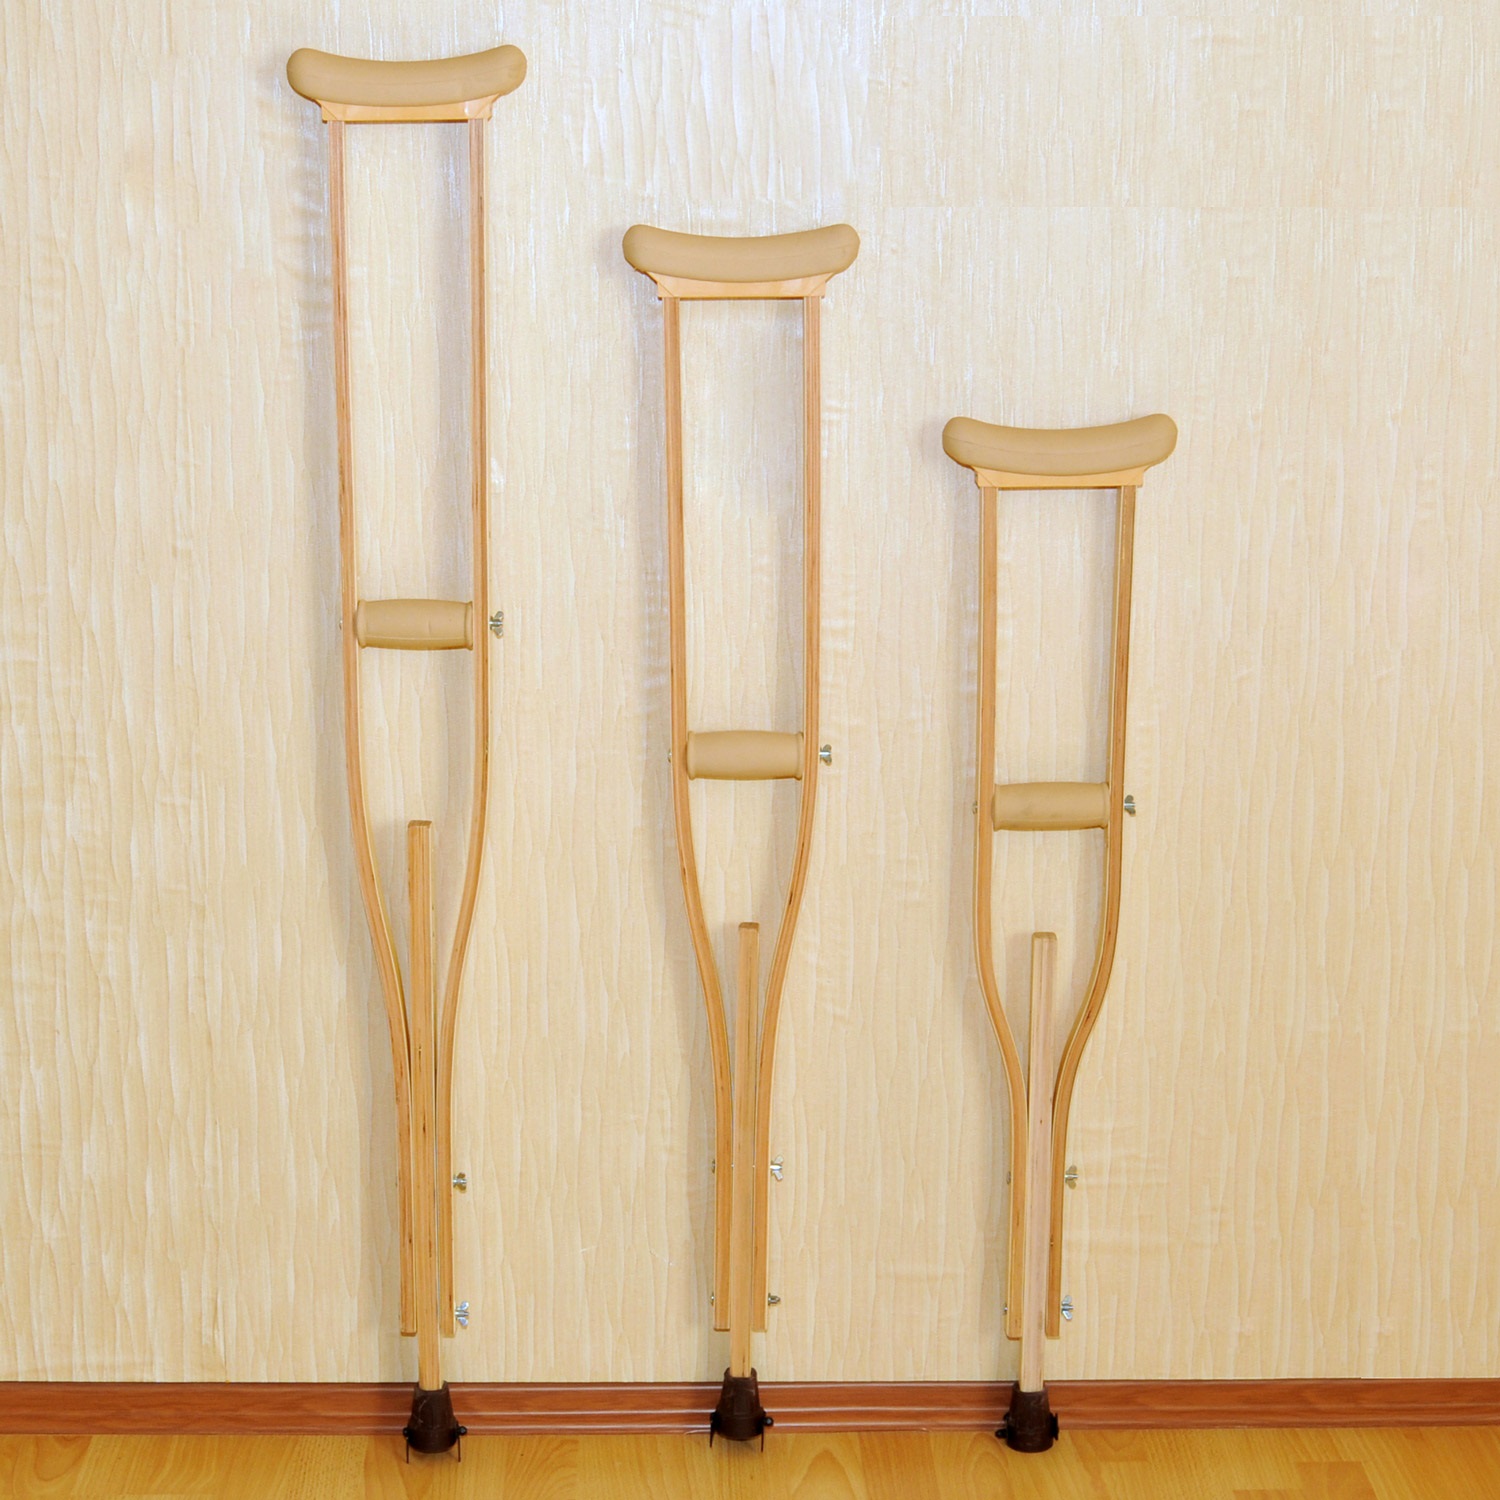 фото Костыли подмышечные деревянные 02-КИ с УПС взрослые от АО Липецкмедтехника